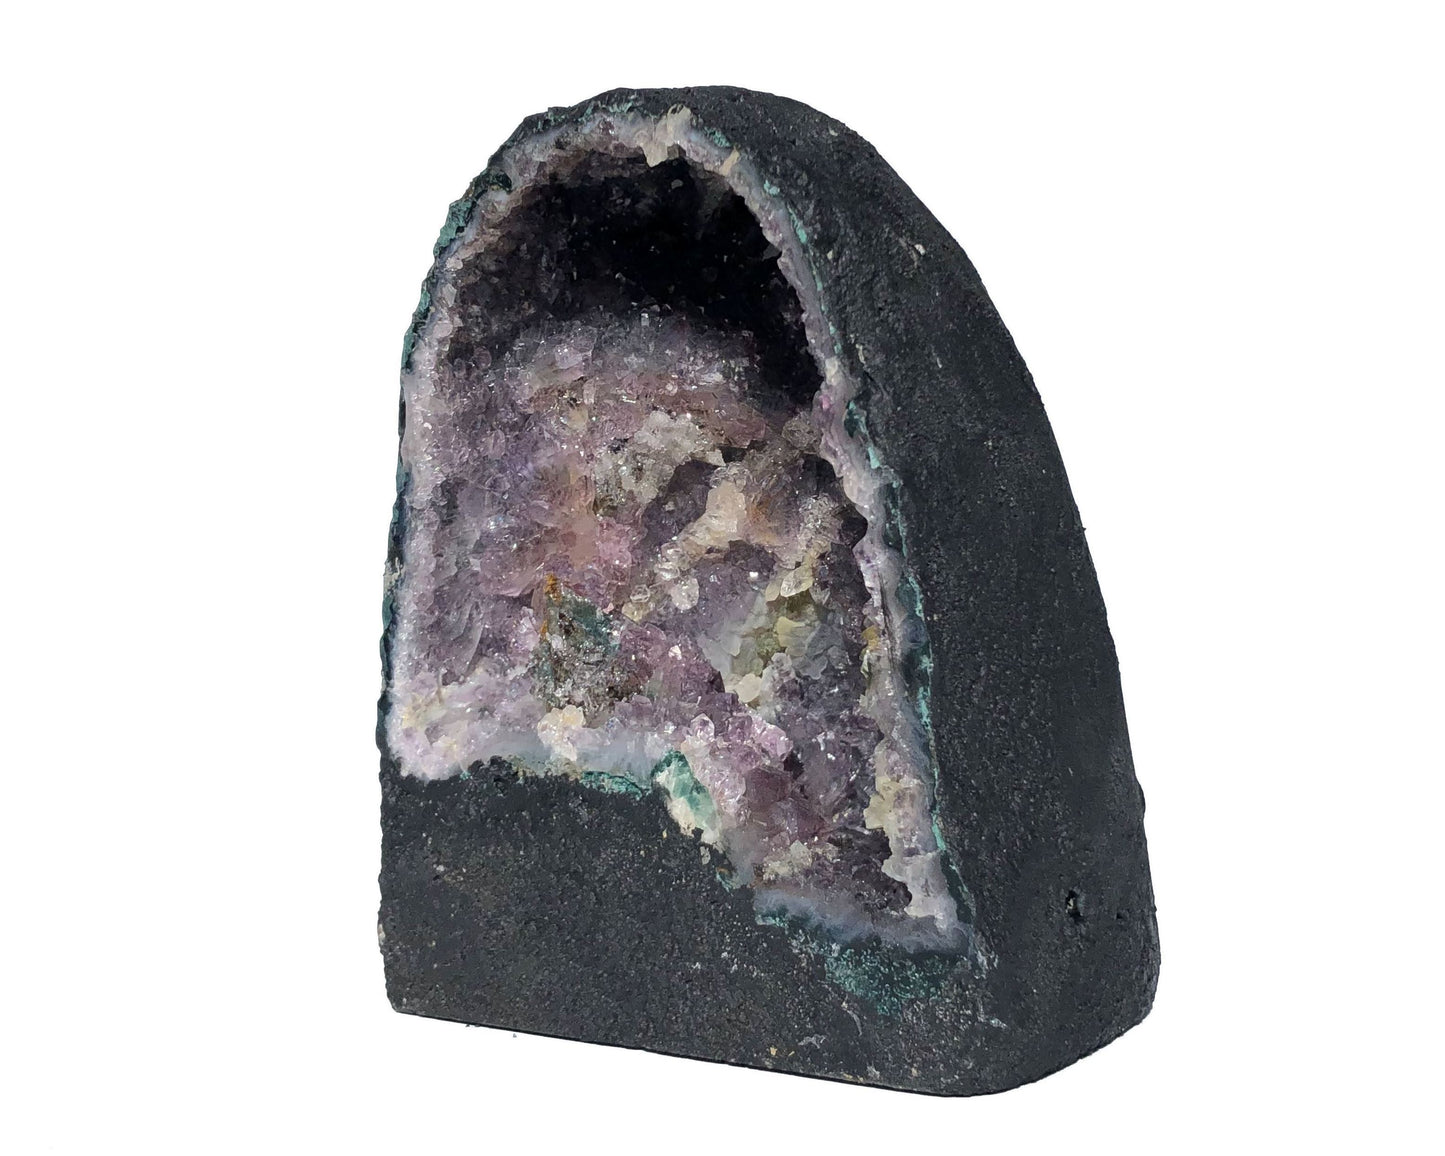 Amethyst Druse - Amethyst Geode zum Aufladen - Amethystdruse